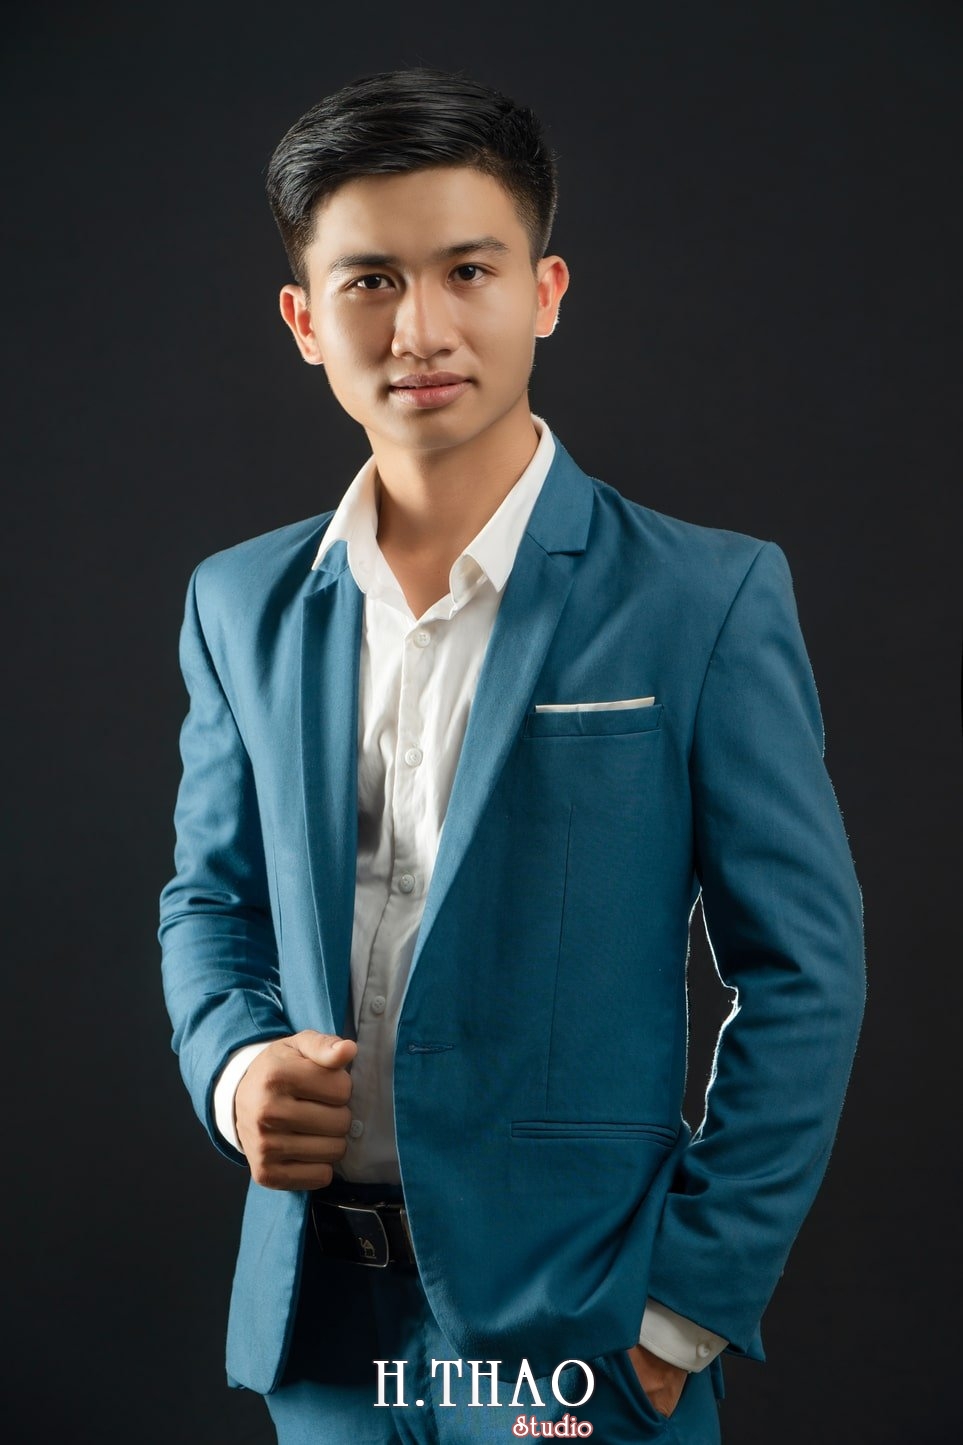 Anh Doanh Nhan 31 - Studio chuyên chụp ảnh profile công ty tại Tp.HCM – HThao Studio